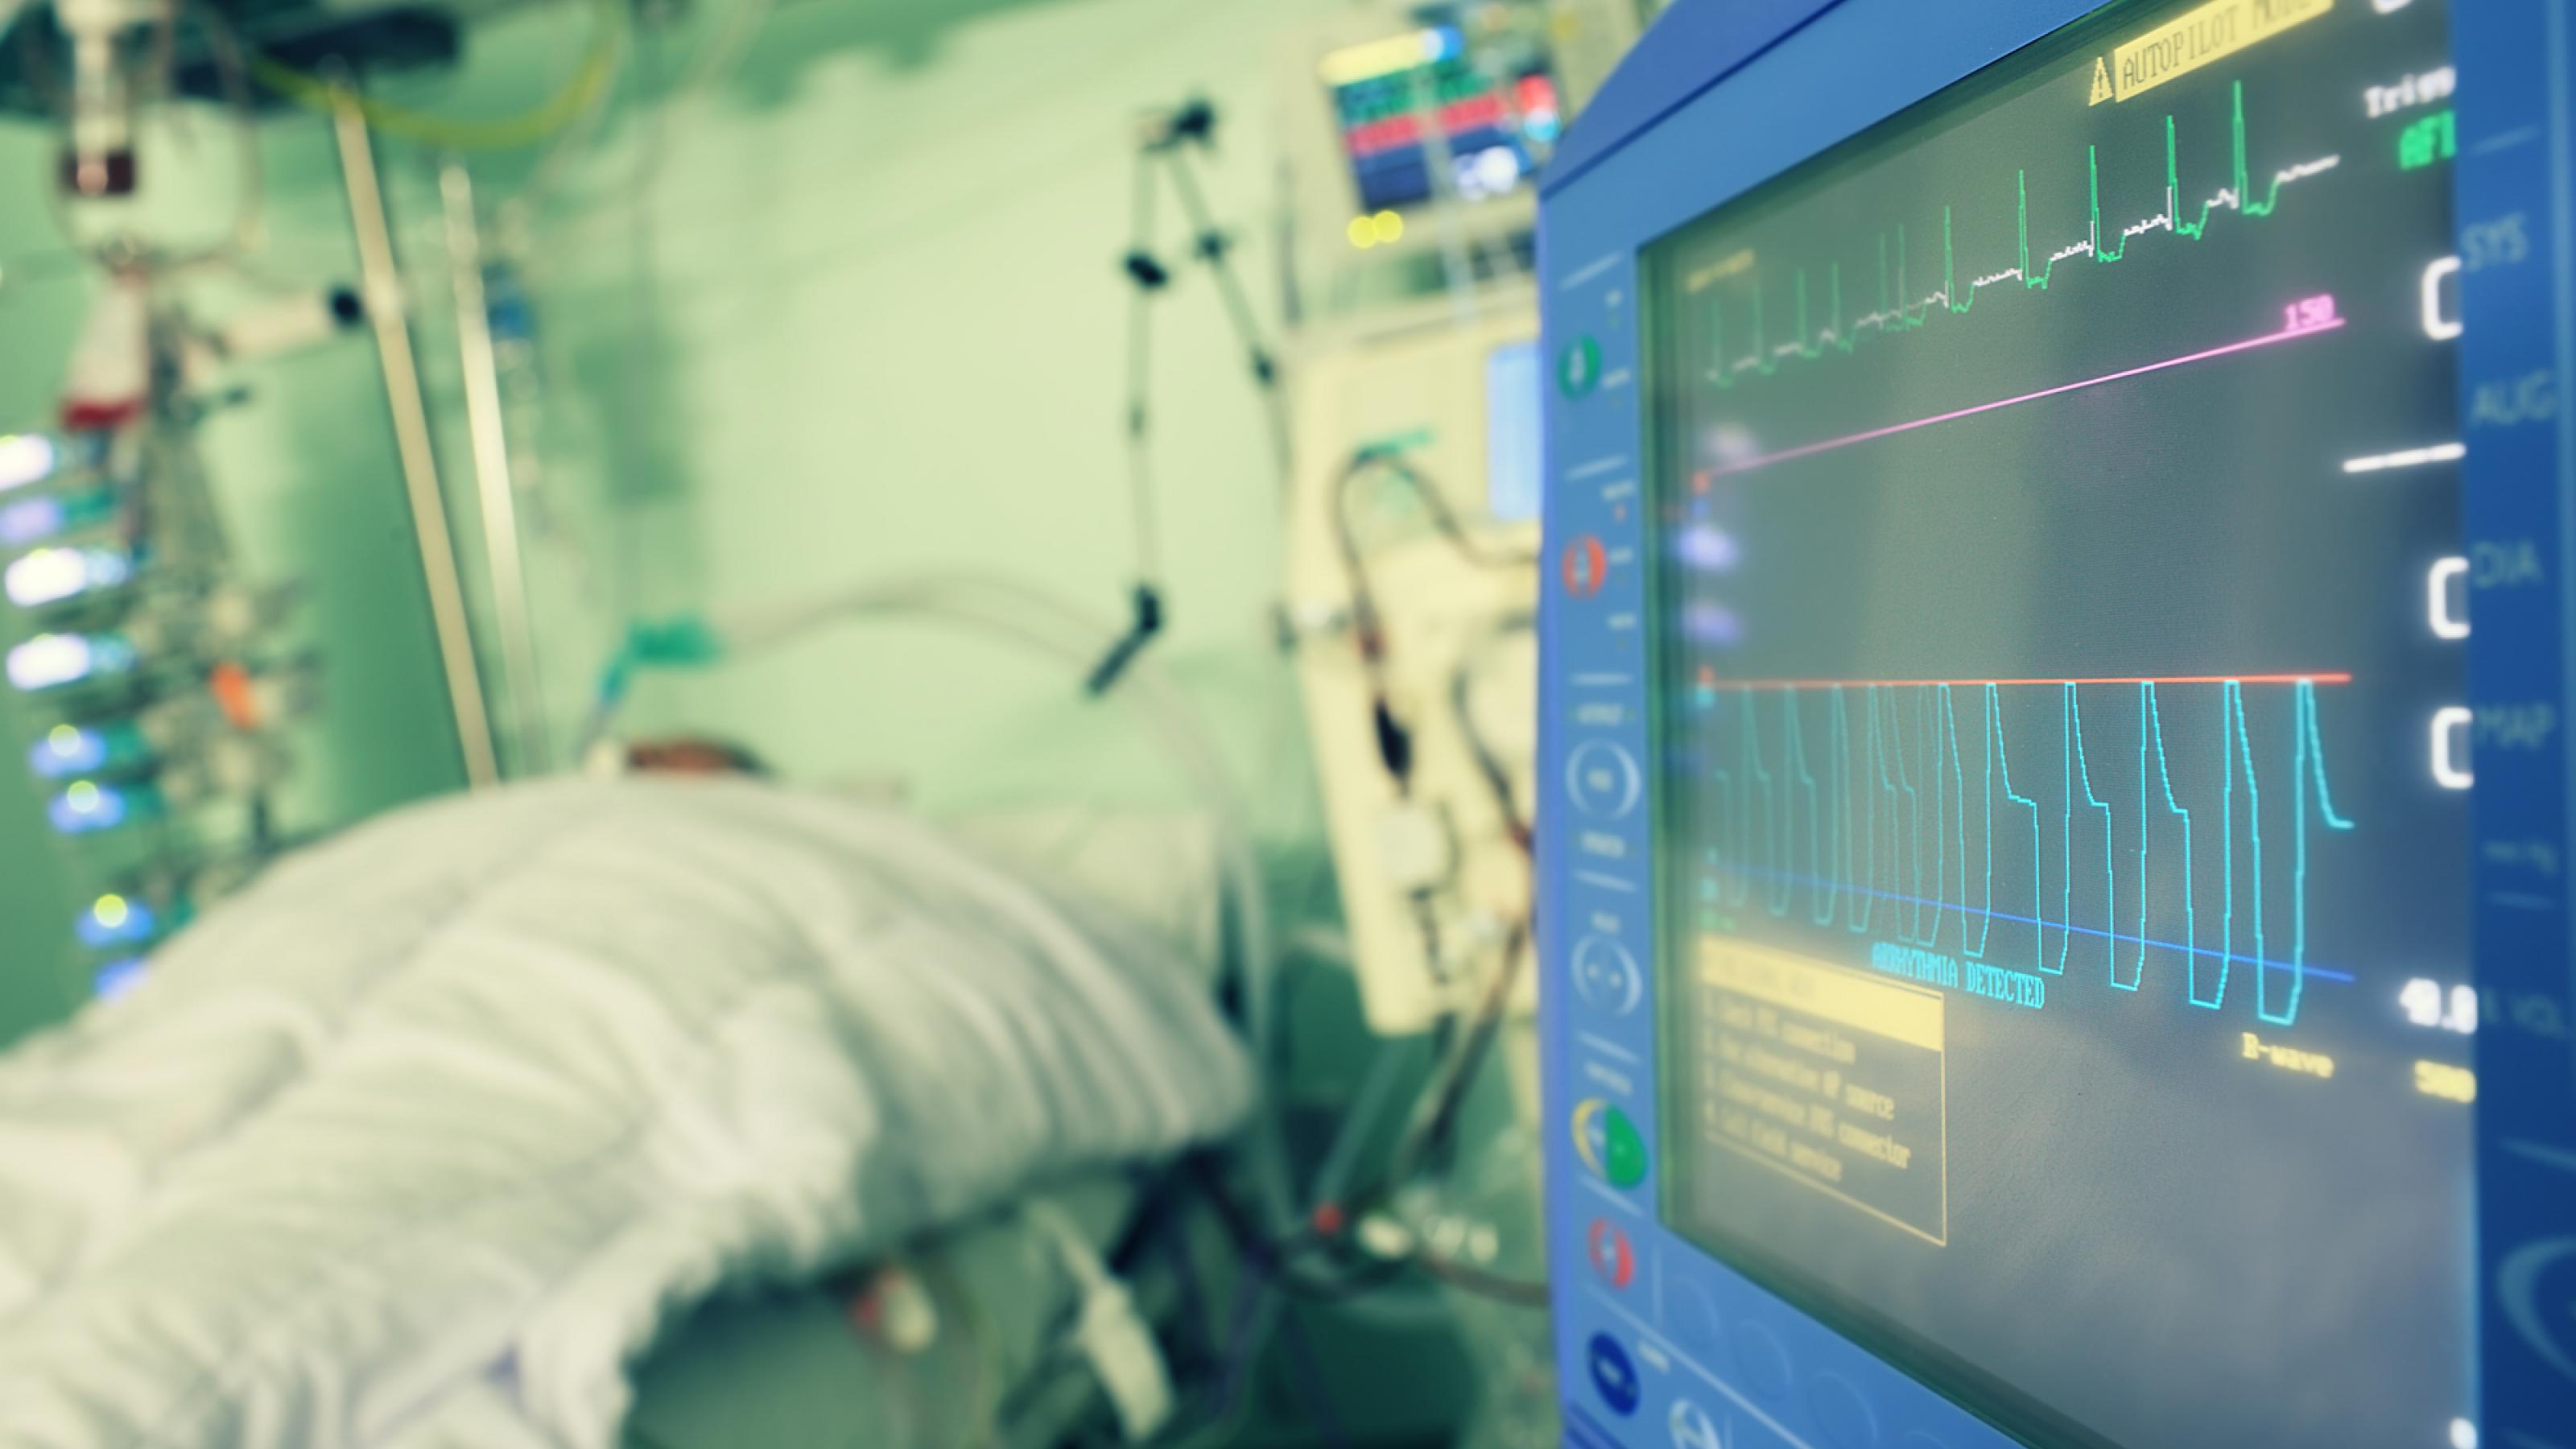 Das Symbolfoto stellt einen Patienten auf der Intensivstation eines Krankenhauses dar. Ein Monitor stellt Informationen über seinen Gesundheitszustand dar.